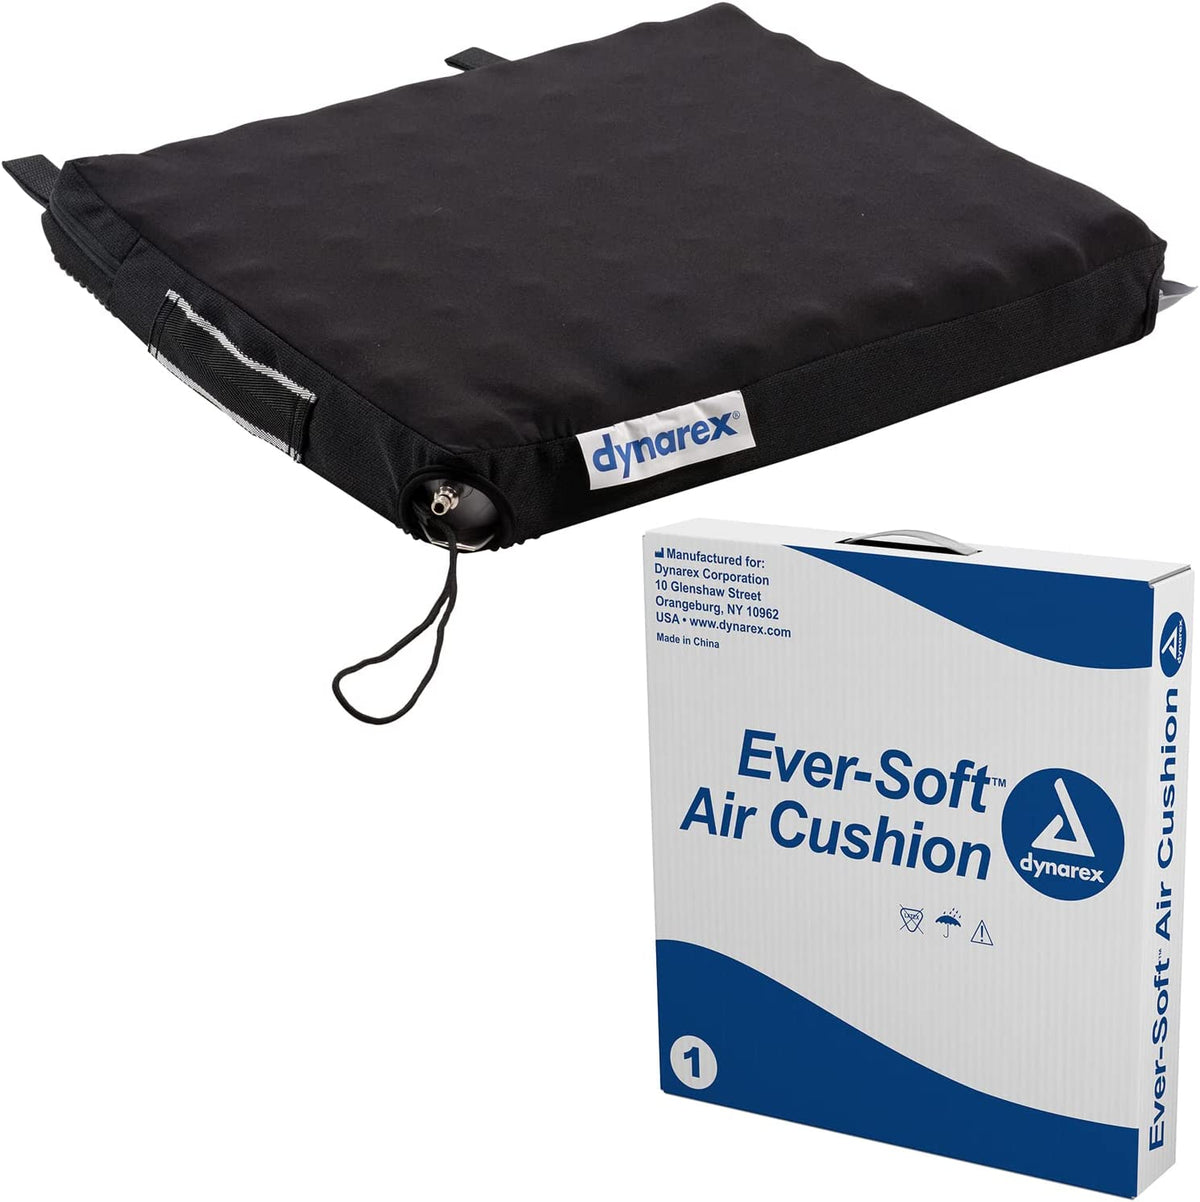 Ever-Soft Air Cushion